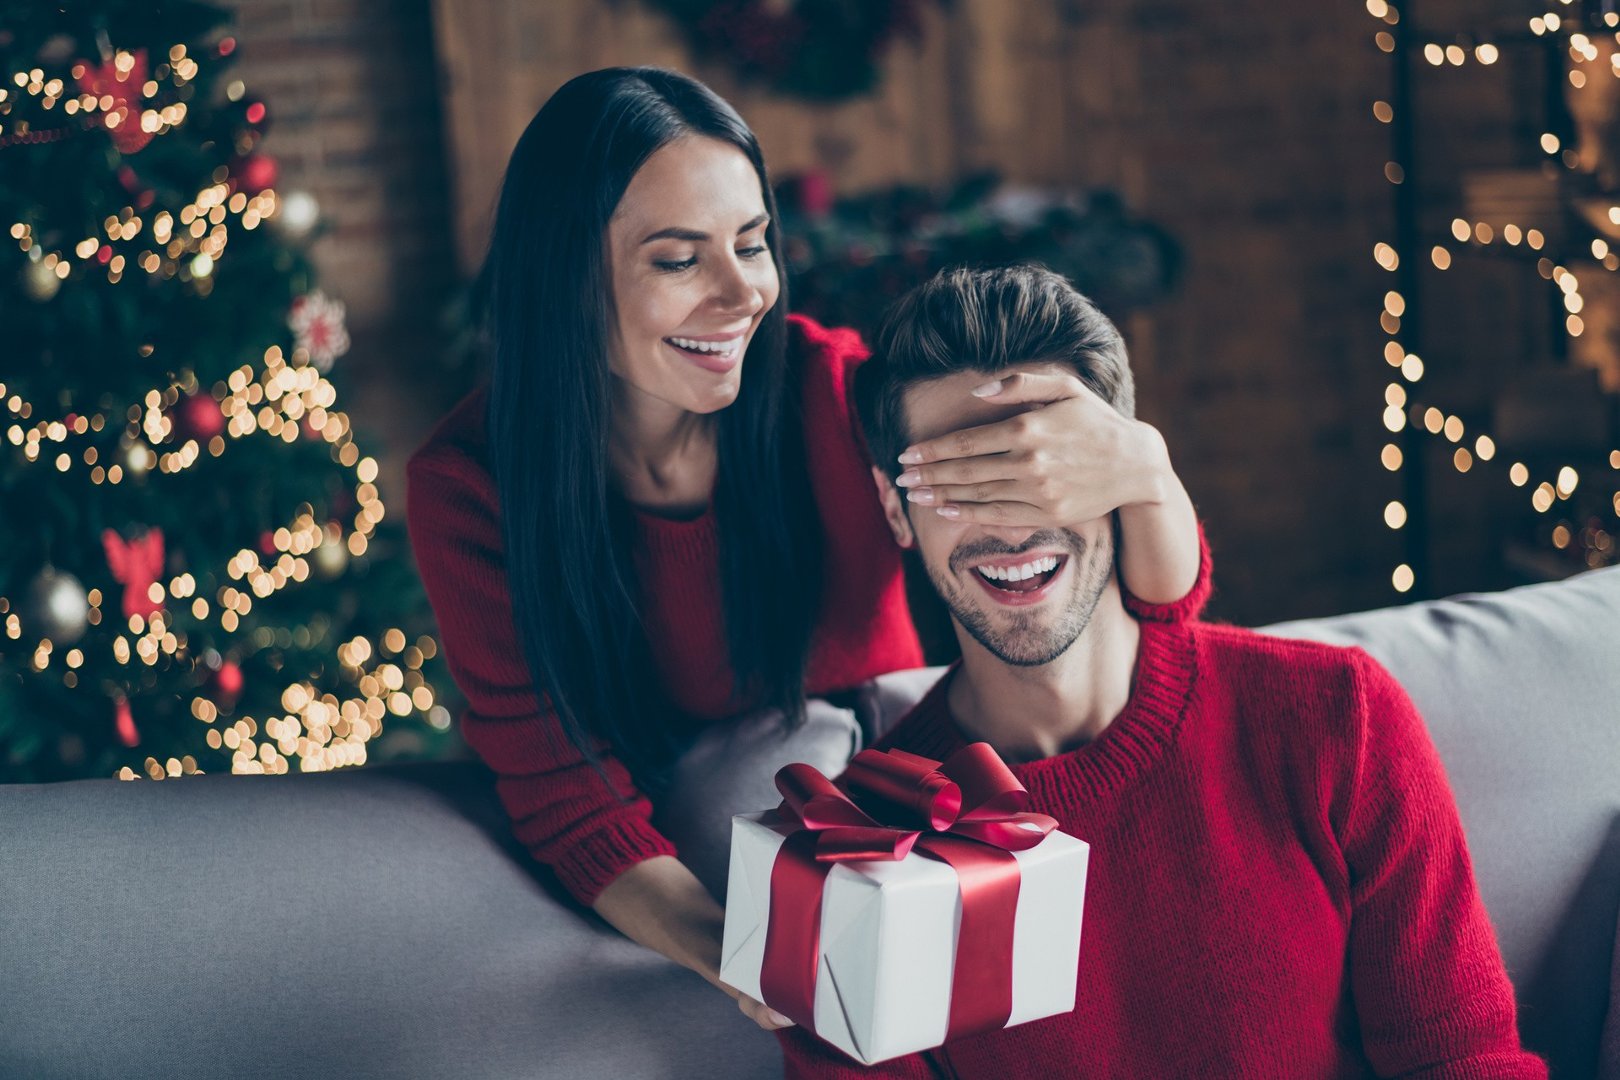 Święta Boże Narodzenie 2021 – jaki prezent wybrać dla mężczyzny? Znajdź  prezent dla męża pod choinkę | Polska Times